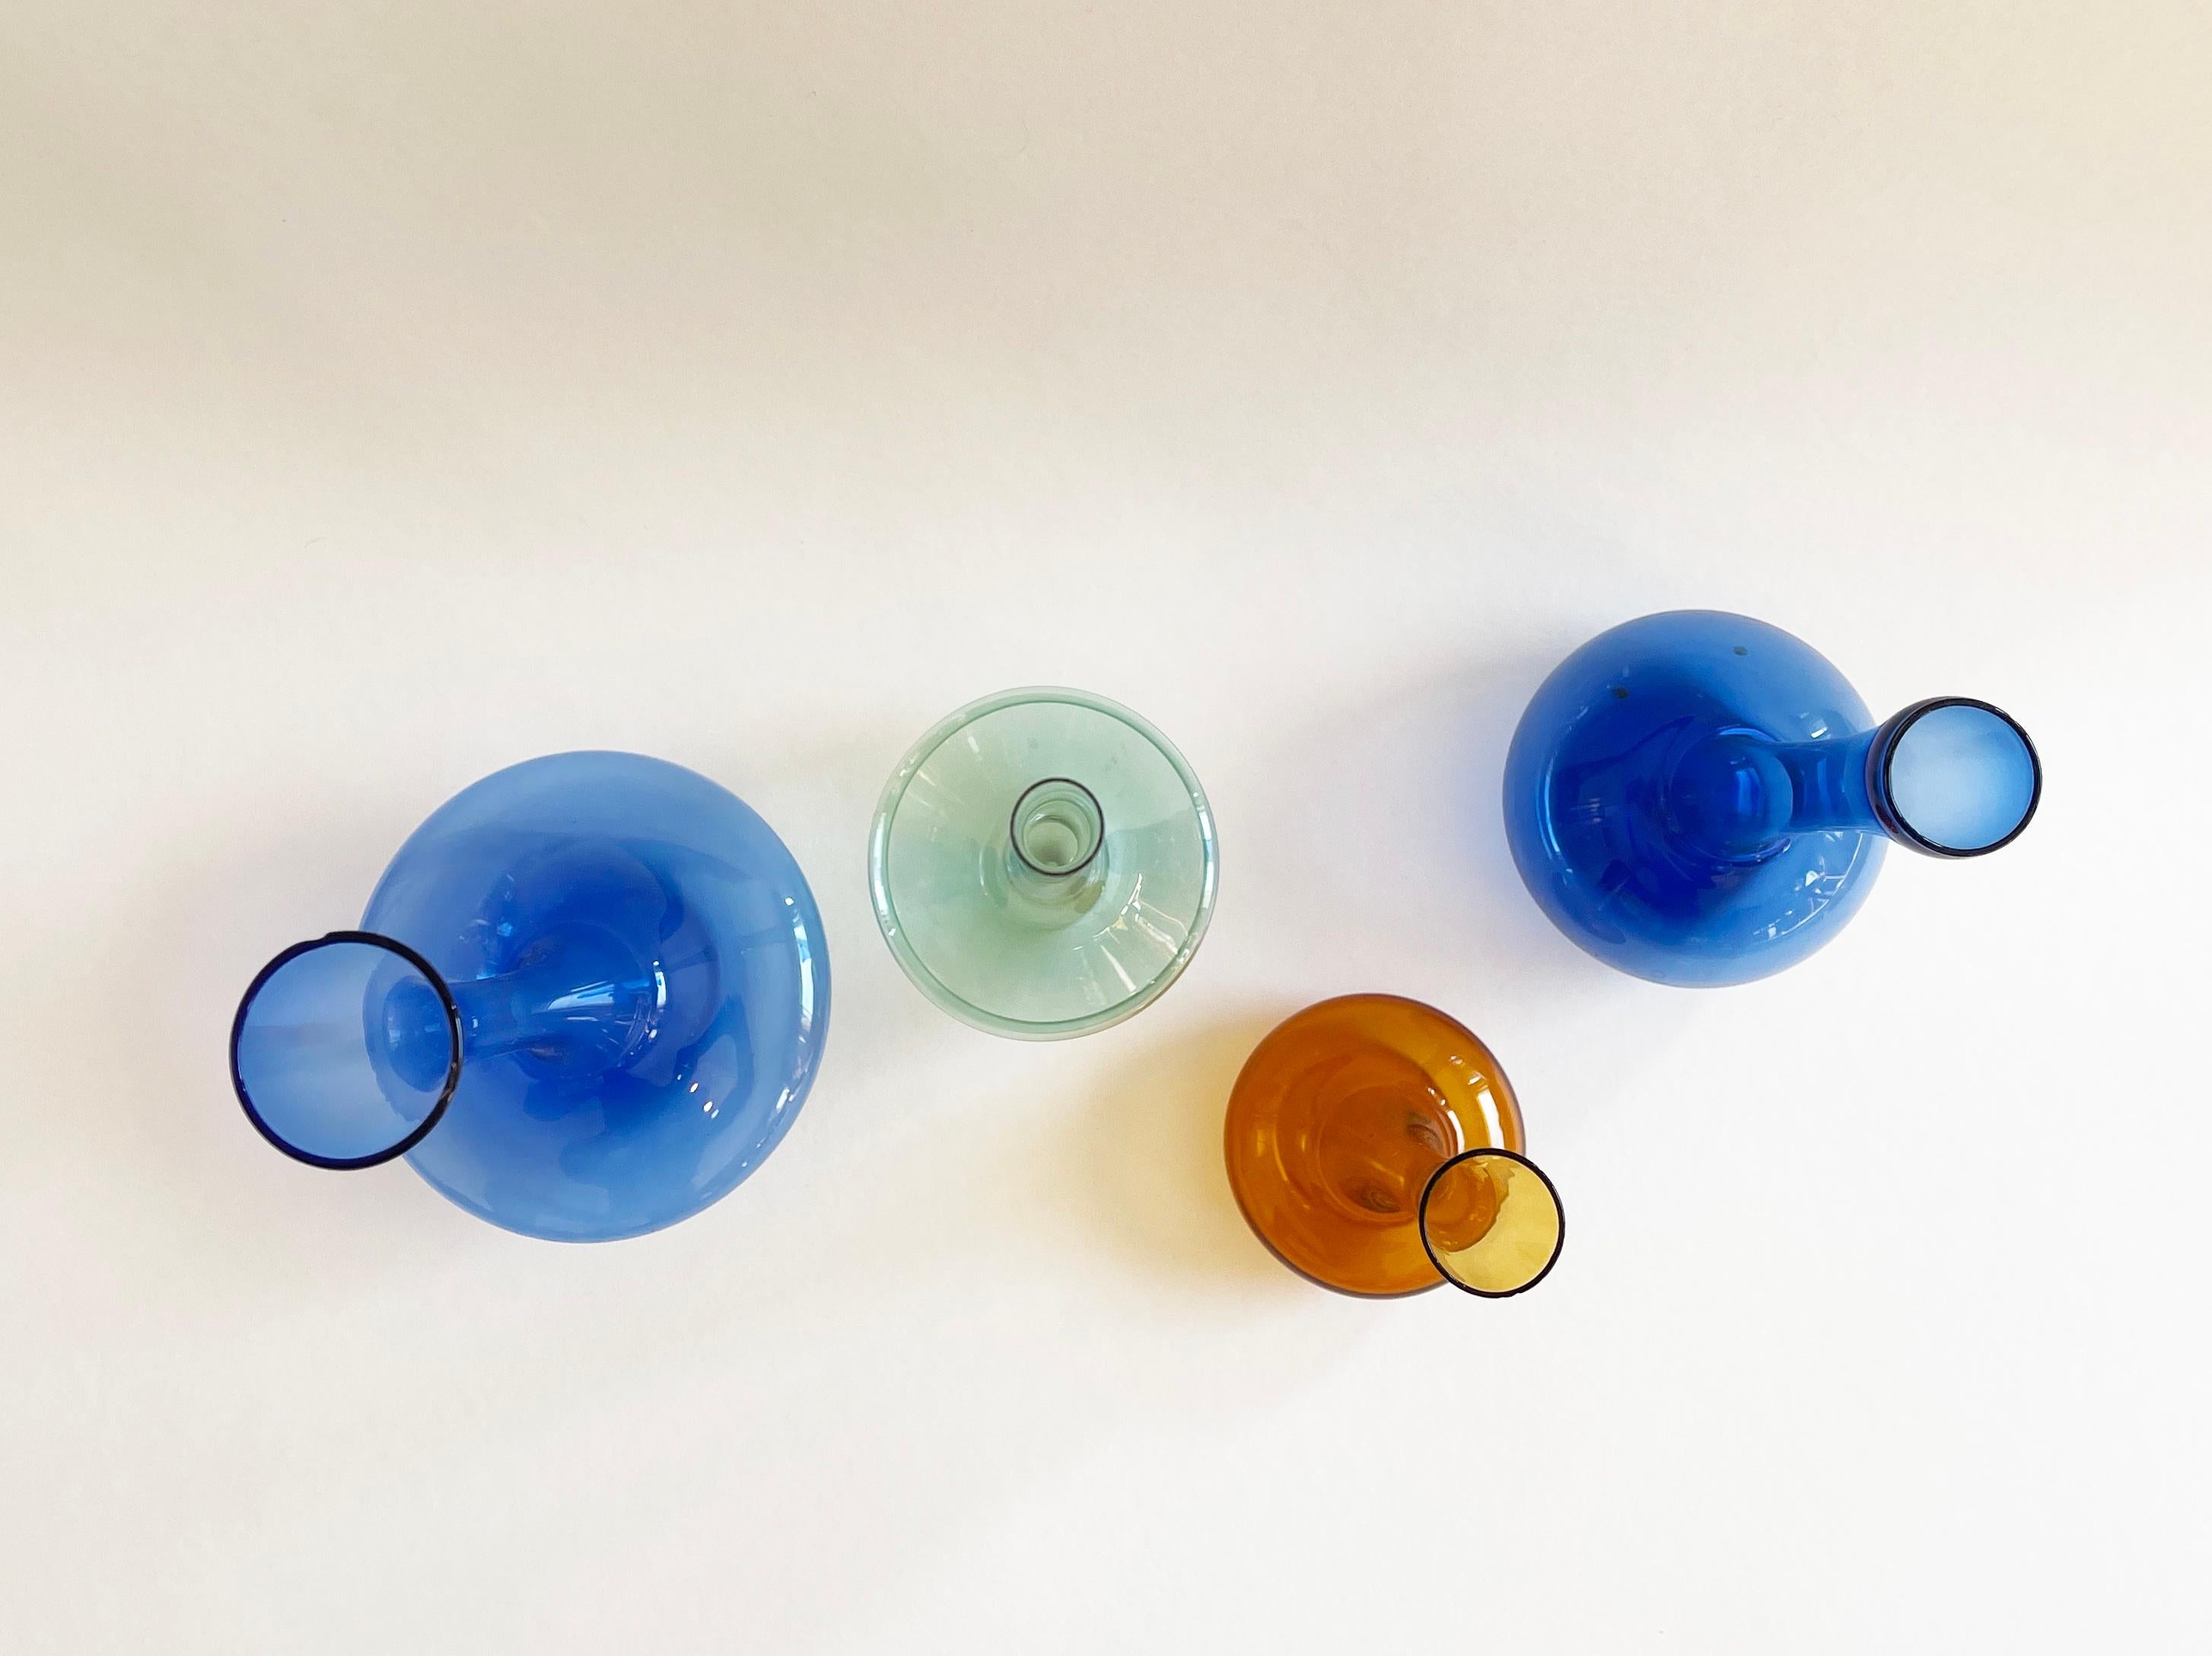 Collectional de quatre vases en verre très délicats, tous attribués à Albin Schädel, célèbre souffleur de verre est-allemand.
Cet artiste habile a créé les objets les plus délicats à partir de verre très fin.
Voici d'ailleurs une partie de mon